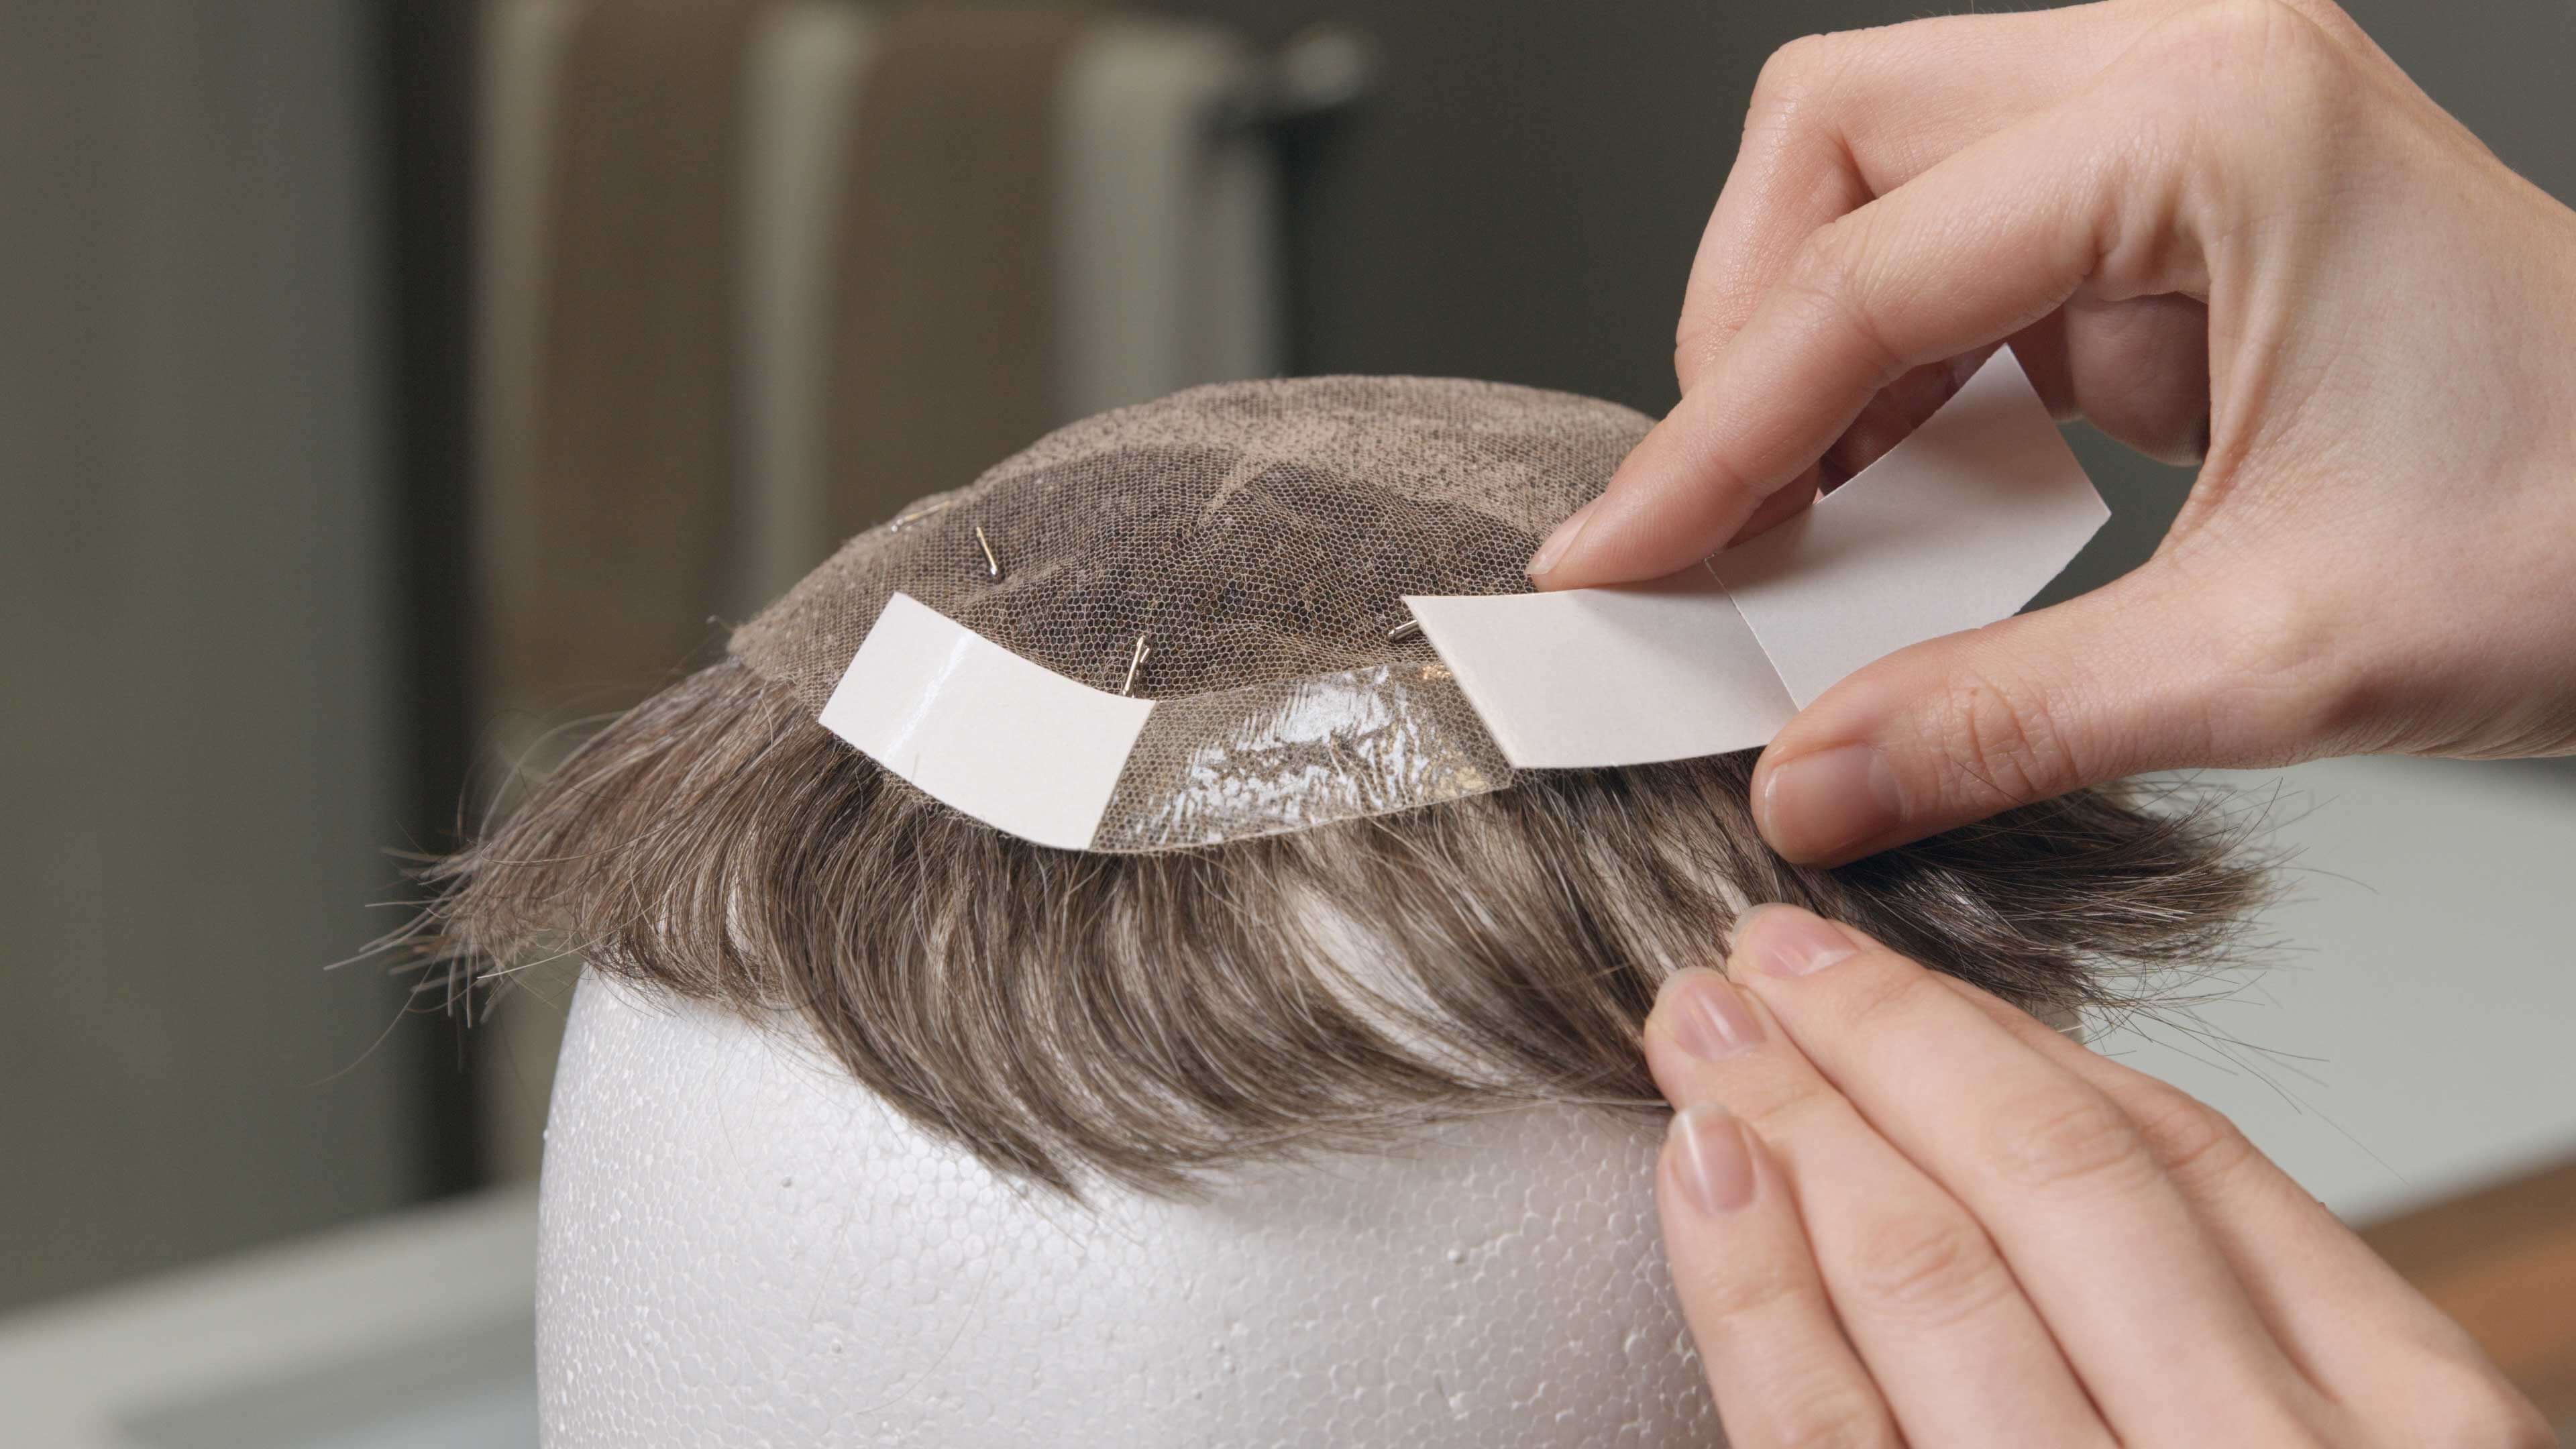 Protez Saç Bantları Temzileme 3. Adım | Protez Saçlar nasıl temizlenir?